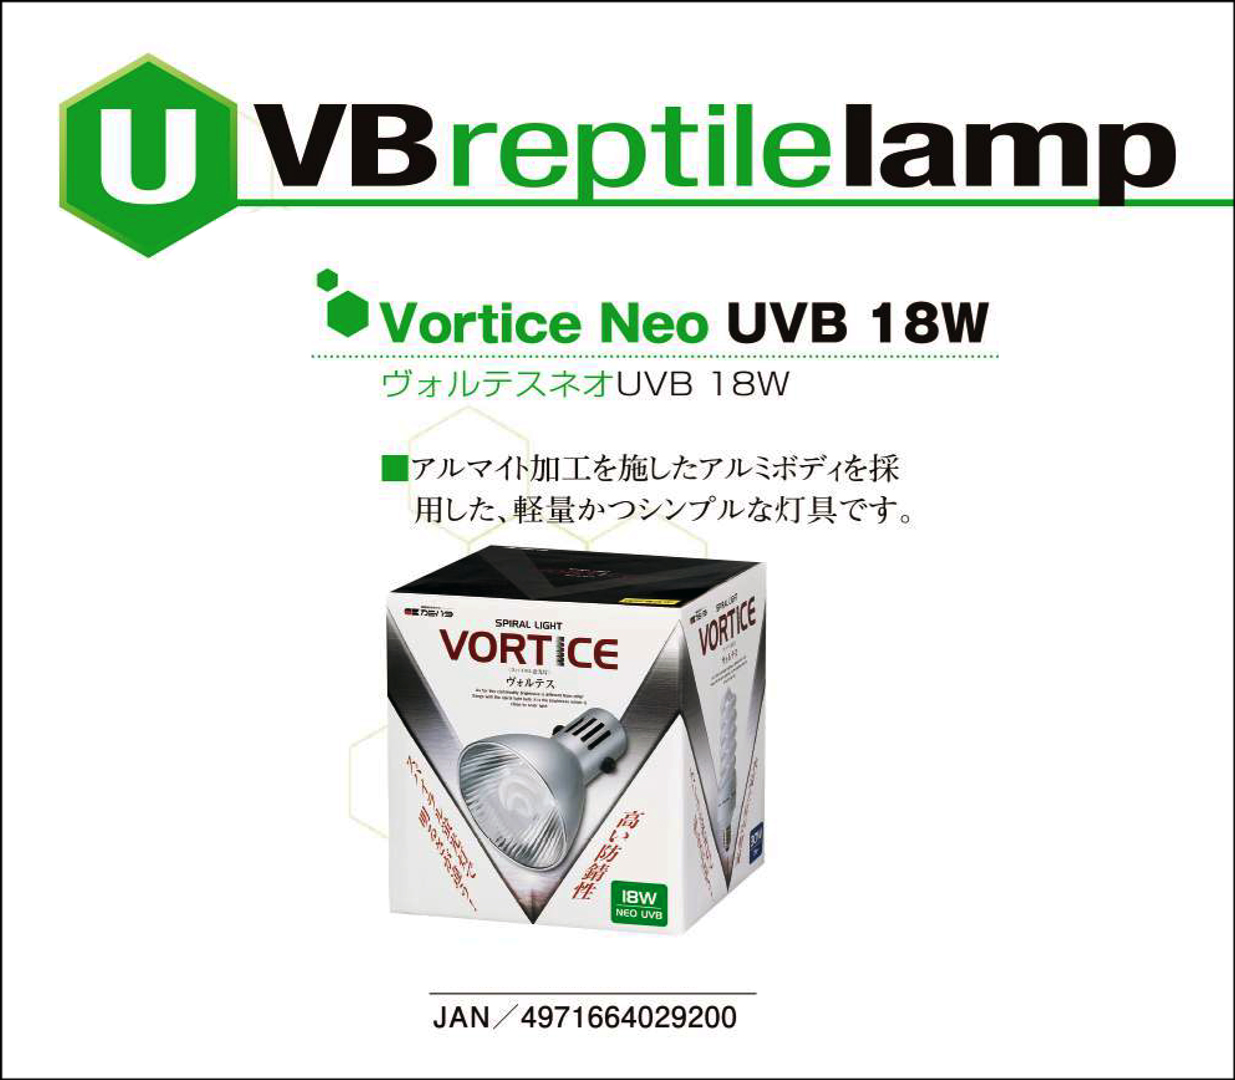 SPIRAL LIGHT VORTICE NEO UVB 18W　カミハタ爬虫類用品カタログ